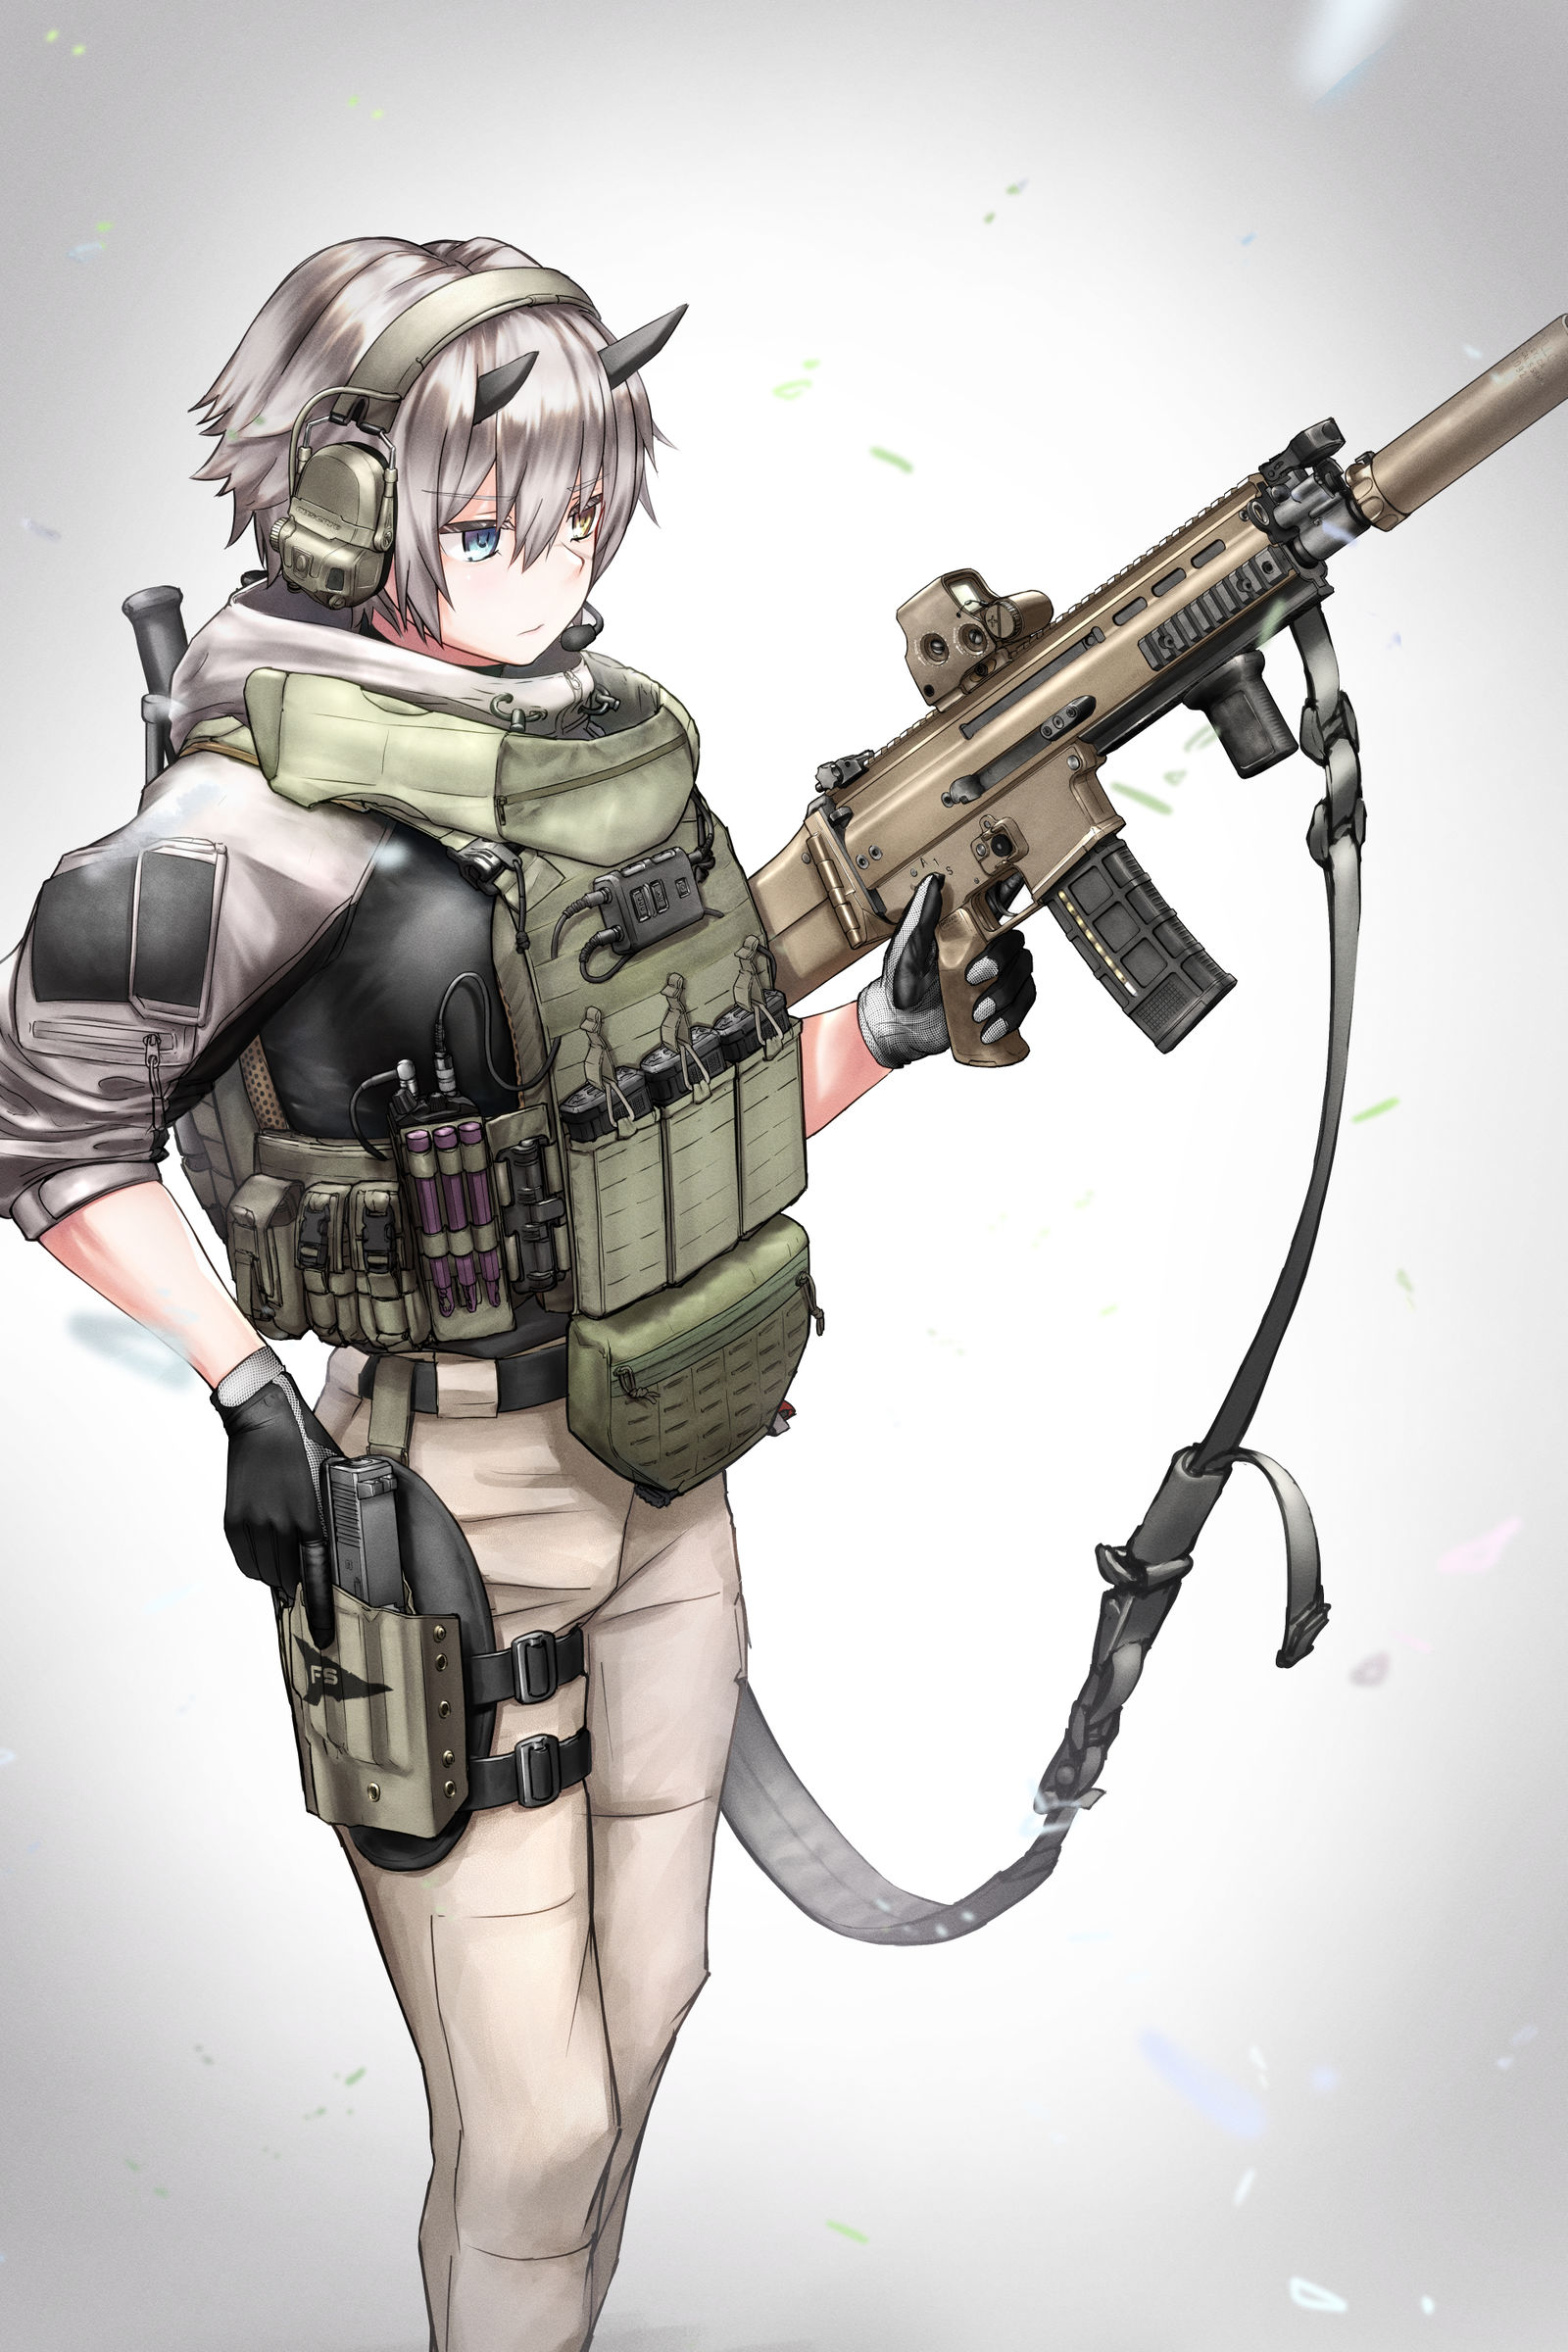 [skeb]FN SCAR-L插画图片壁纸